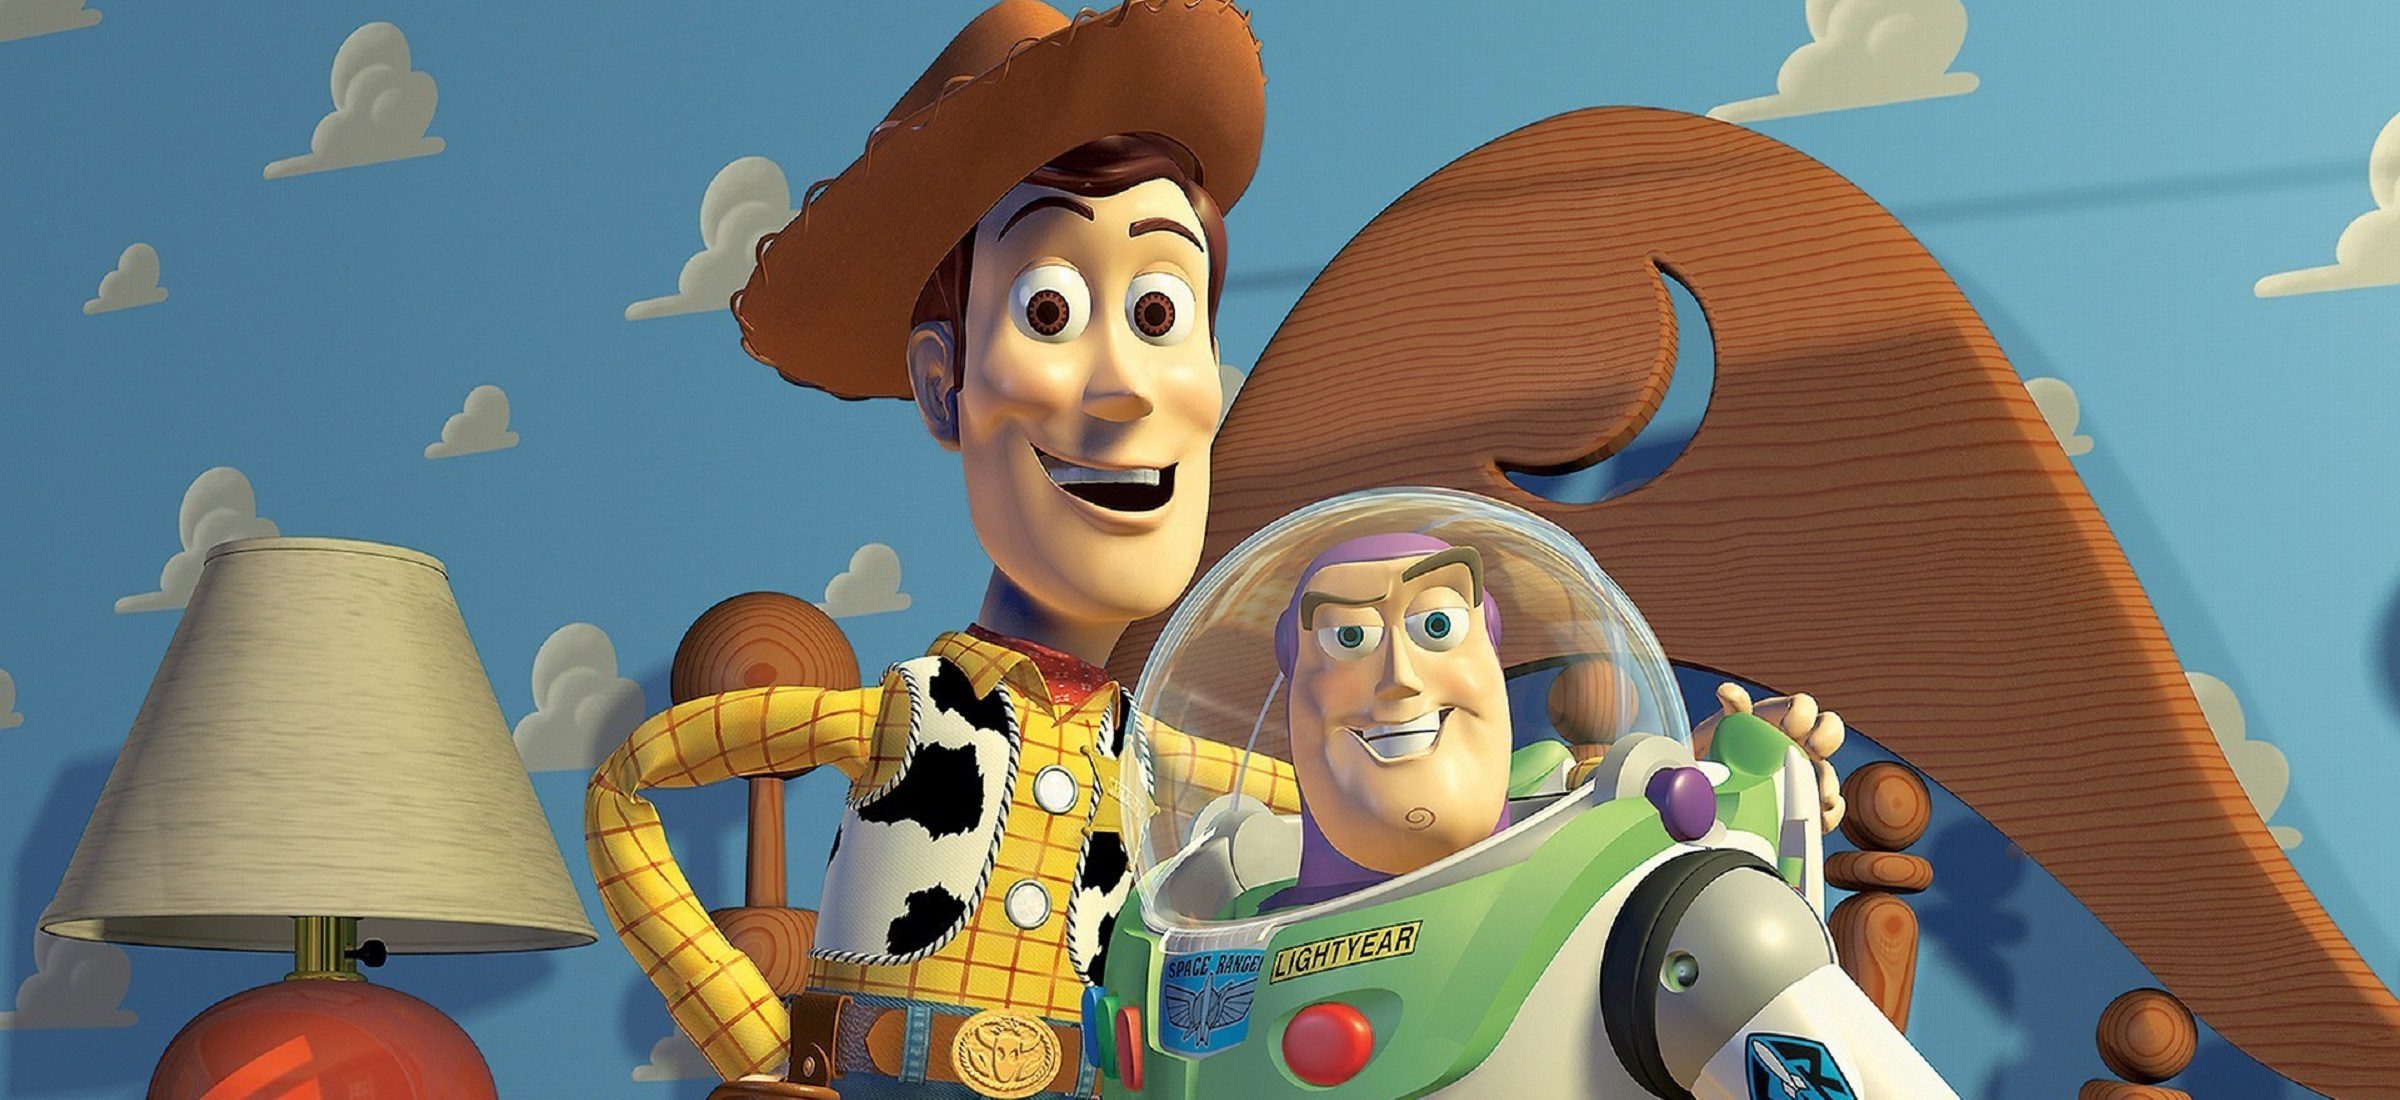 Kinder und Eltern lieben Pixar. Bevor die Macher von Toy Story Erfolg hatten, hatten sie einen langen und holprigen Weg hinter sich 260